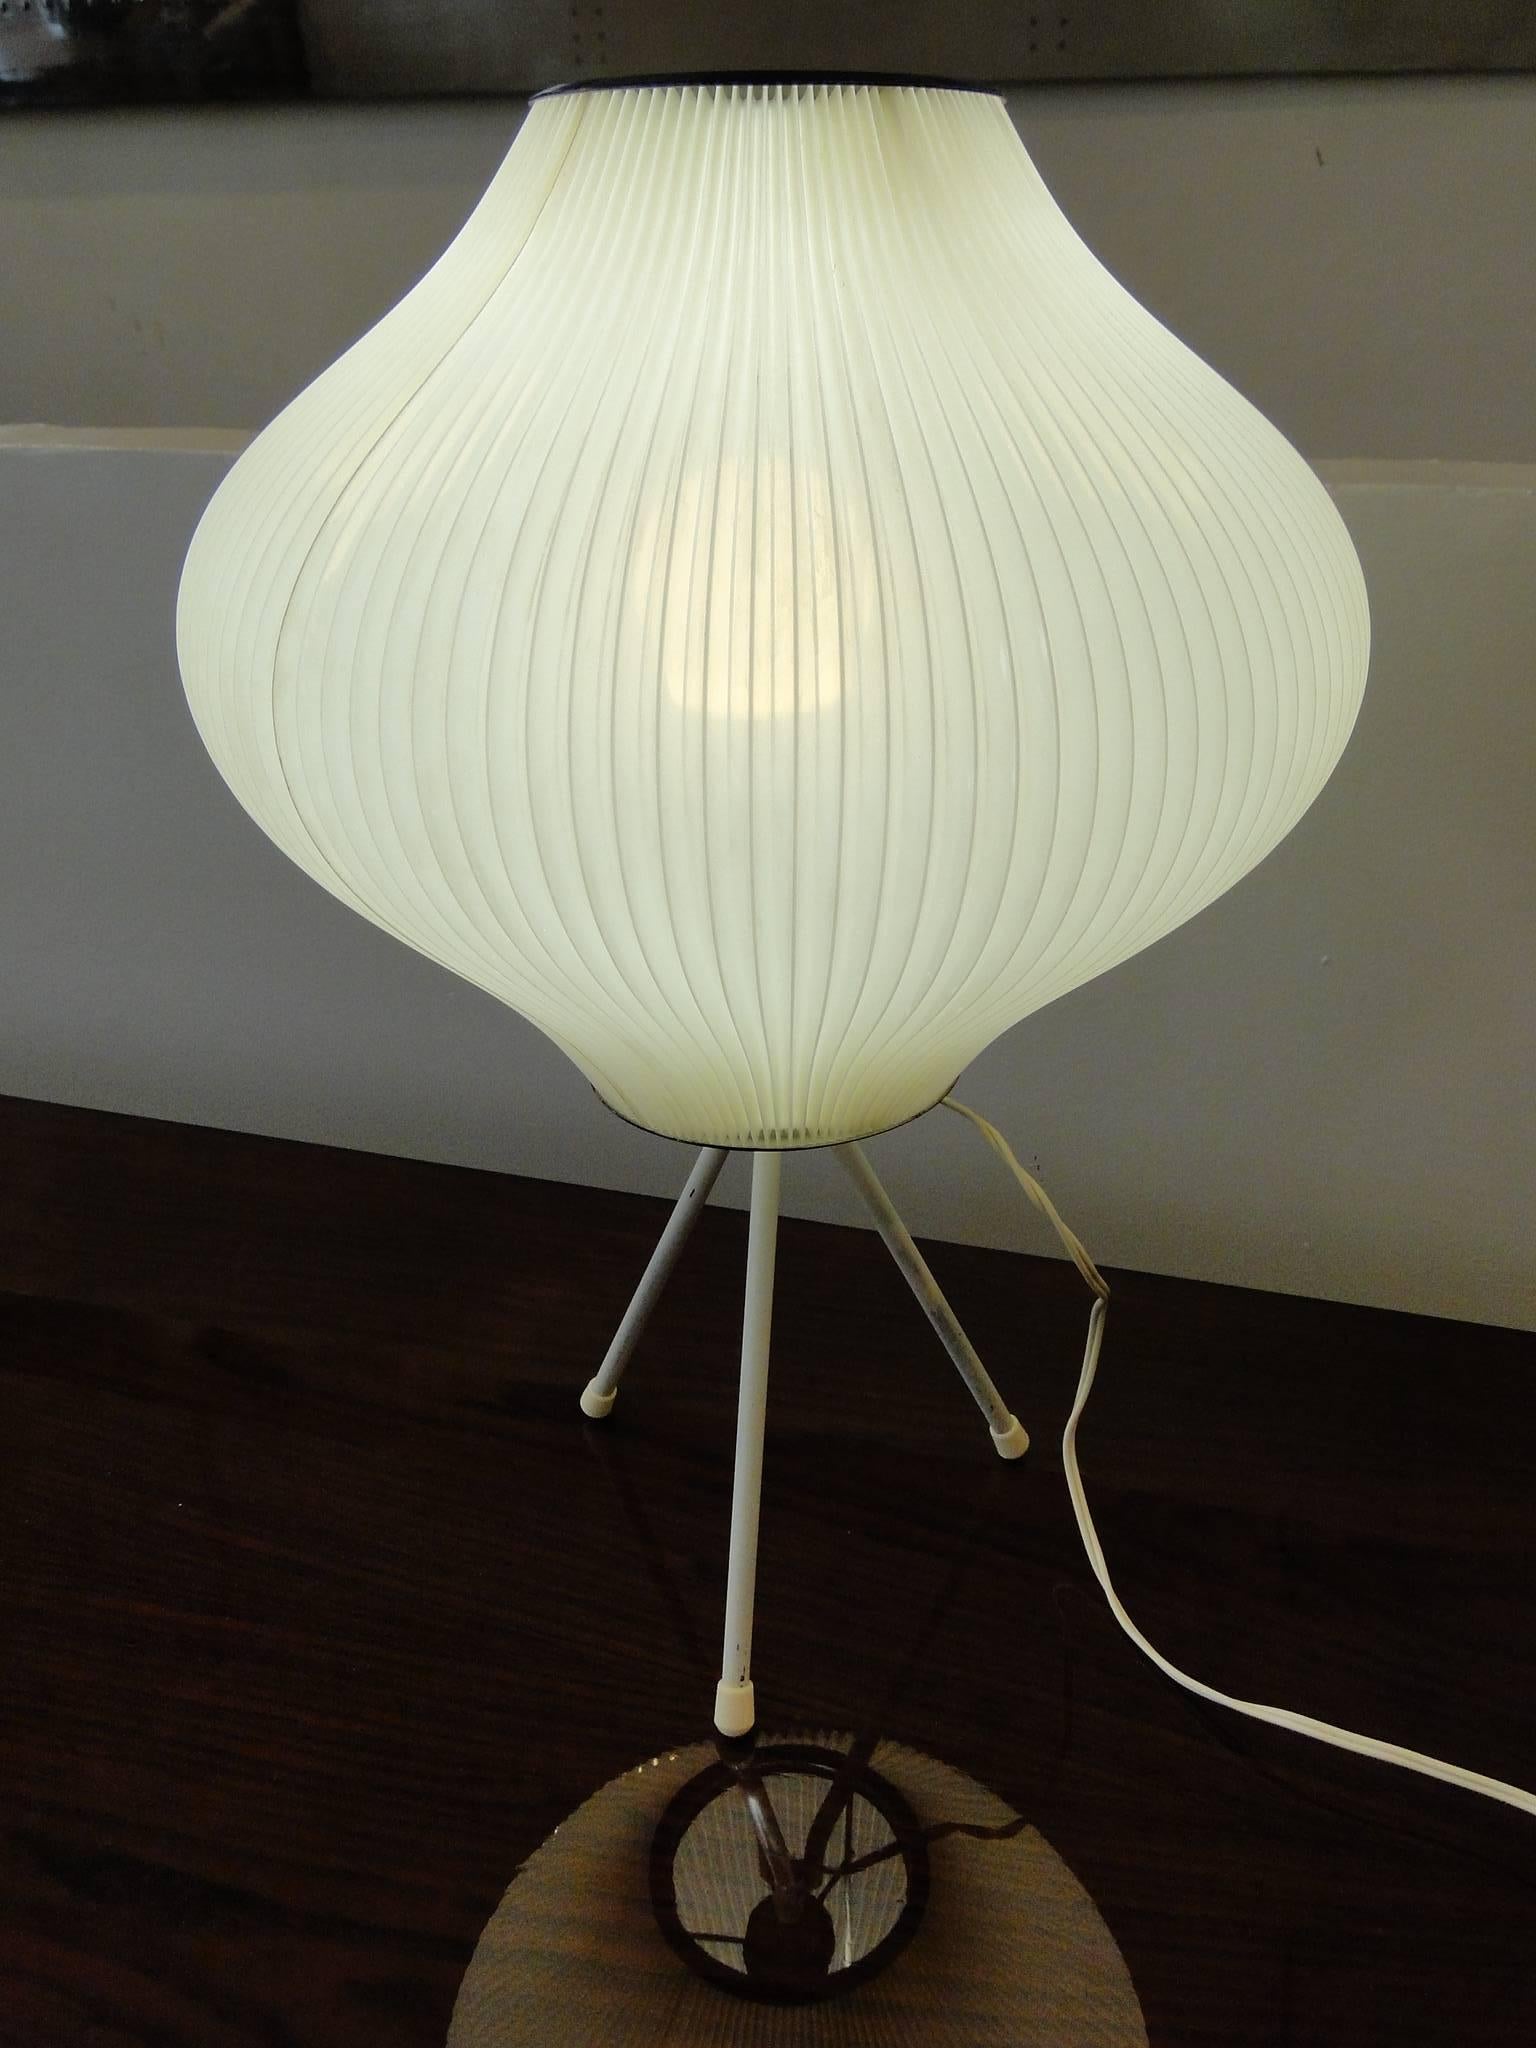 Lampe de table Rispal de 1960

La lampe est livrée avec une prise pour votre pays. 
Il suffit d'allumer 
(USA, JP, AUS, UK, FR, DE).